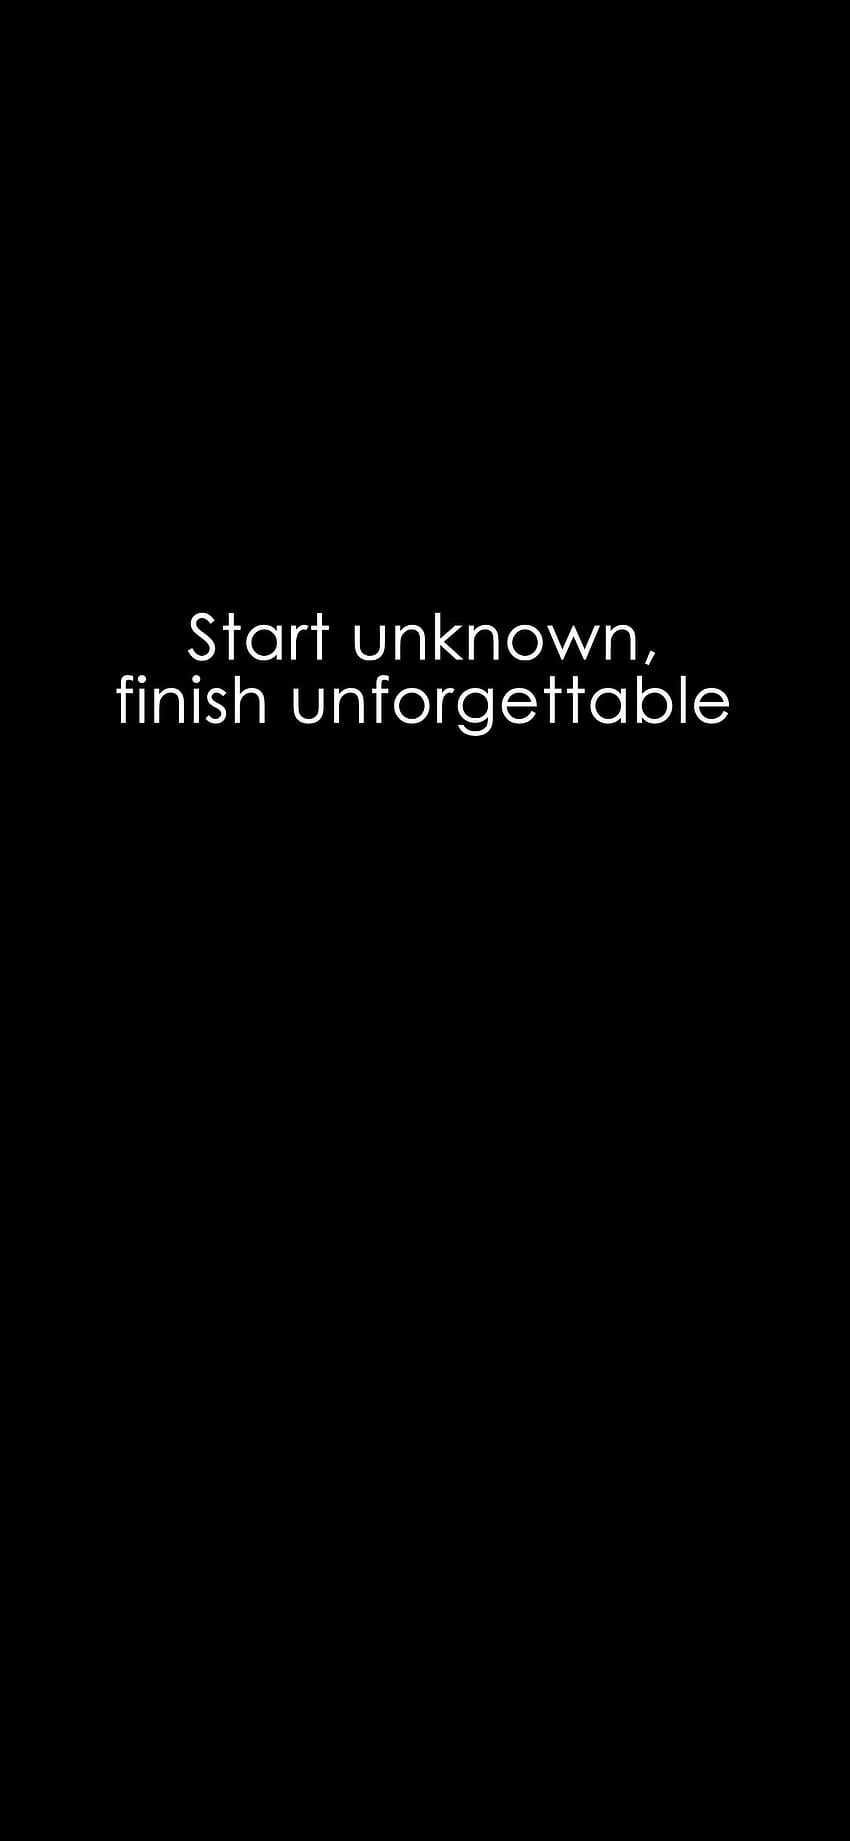 Start unknown, finish unforgettable. HD phone wallpaper